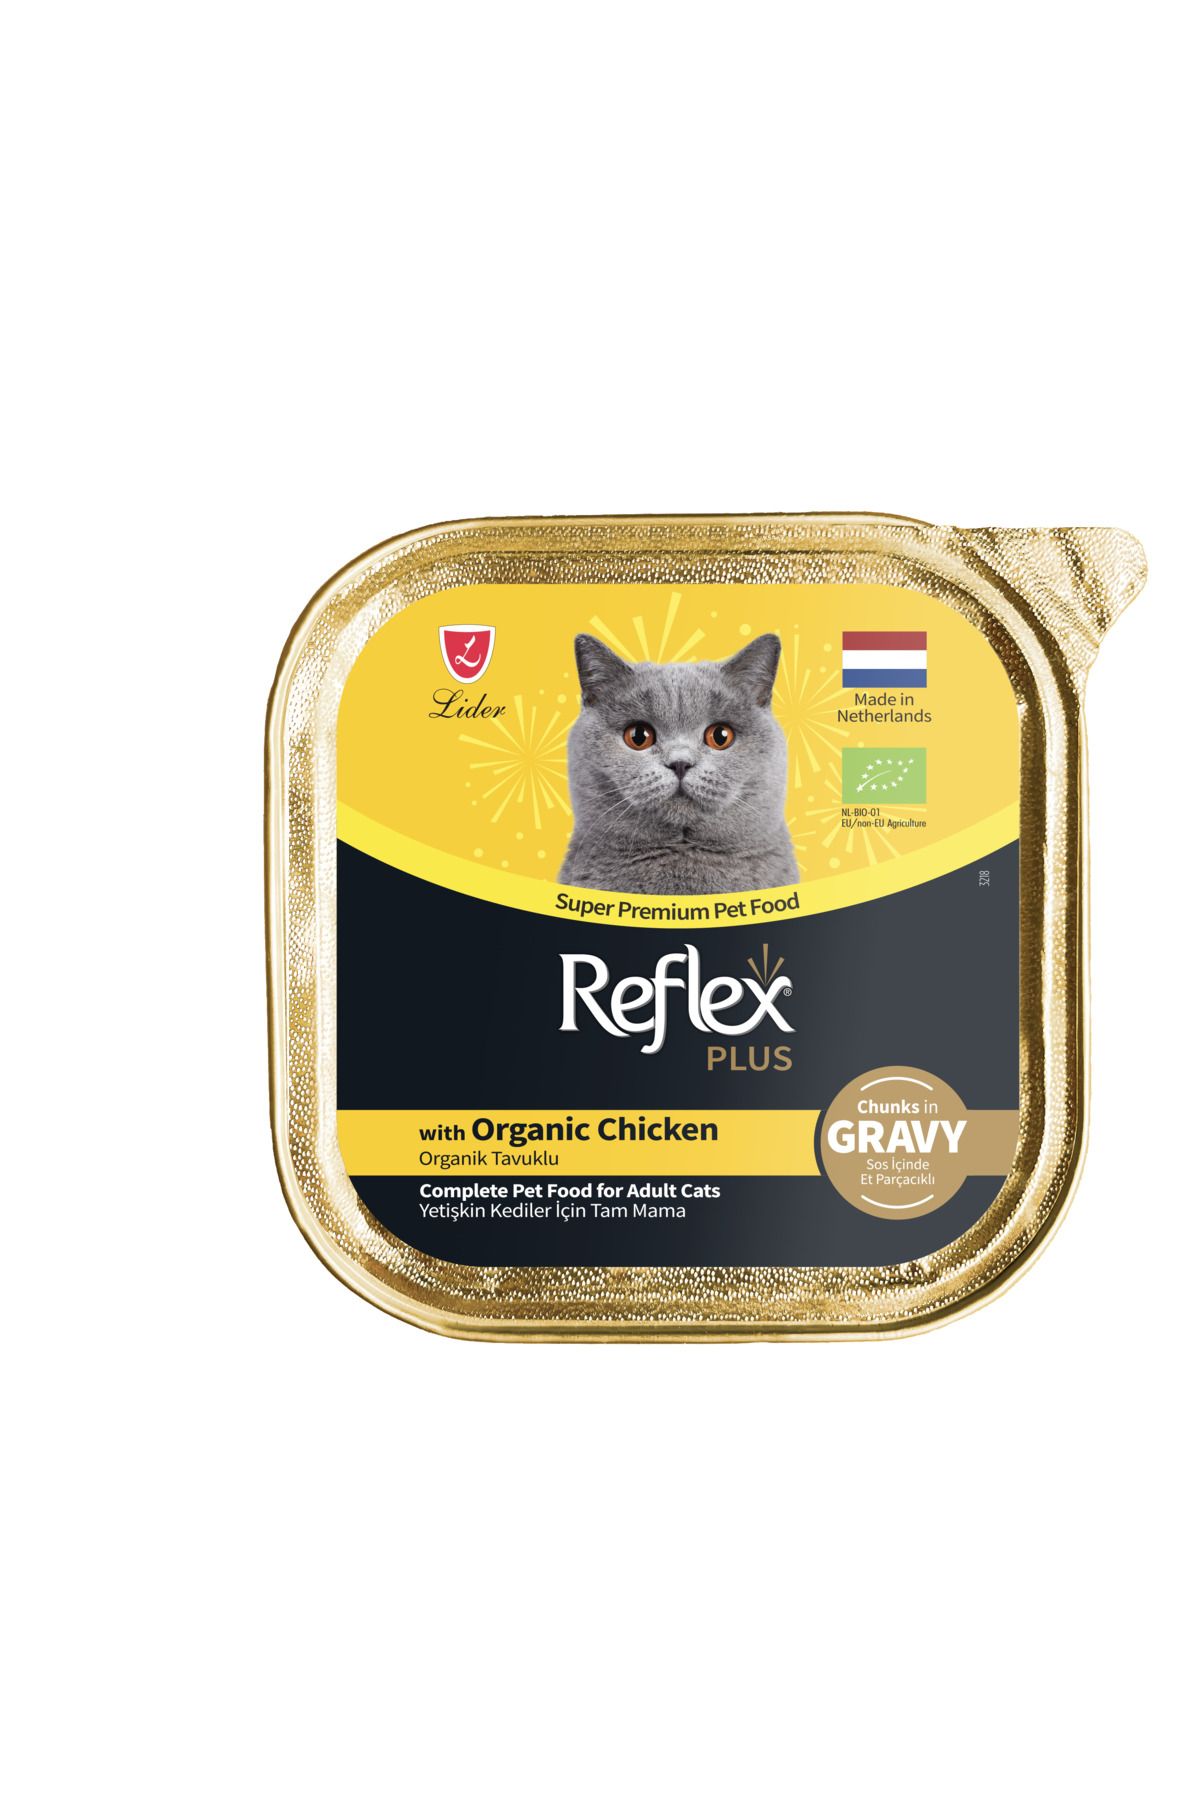 Reflex Plus Alu Tray 85 gr Organik Tavuklu Sos içinde Et parçacıklı Yetişkin Kedi Yaş Mama PetAlfa07